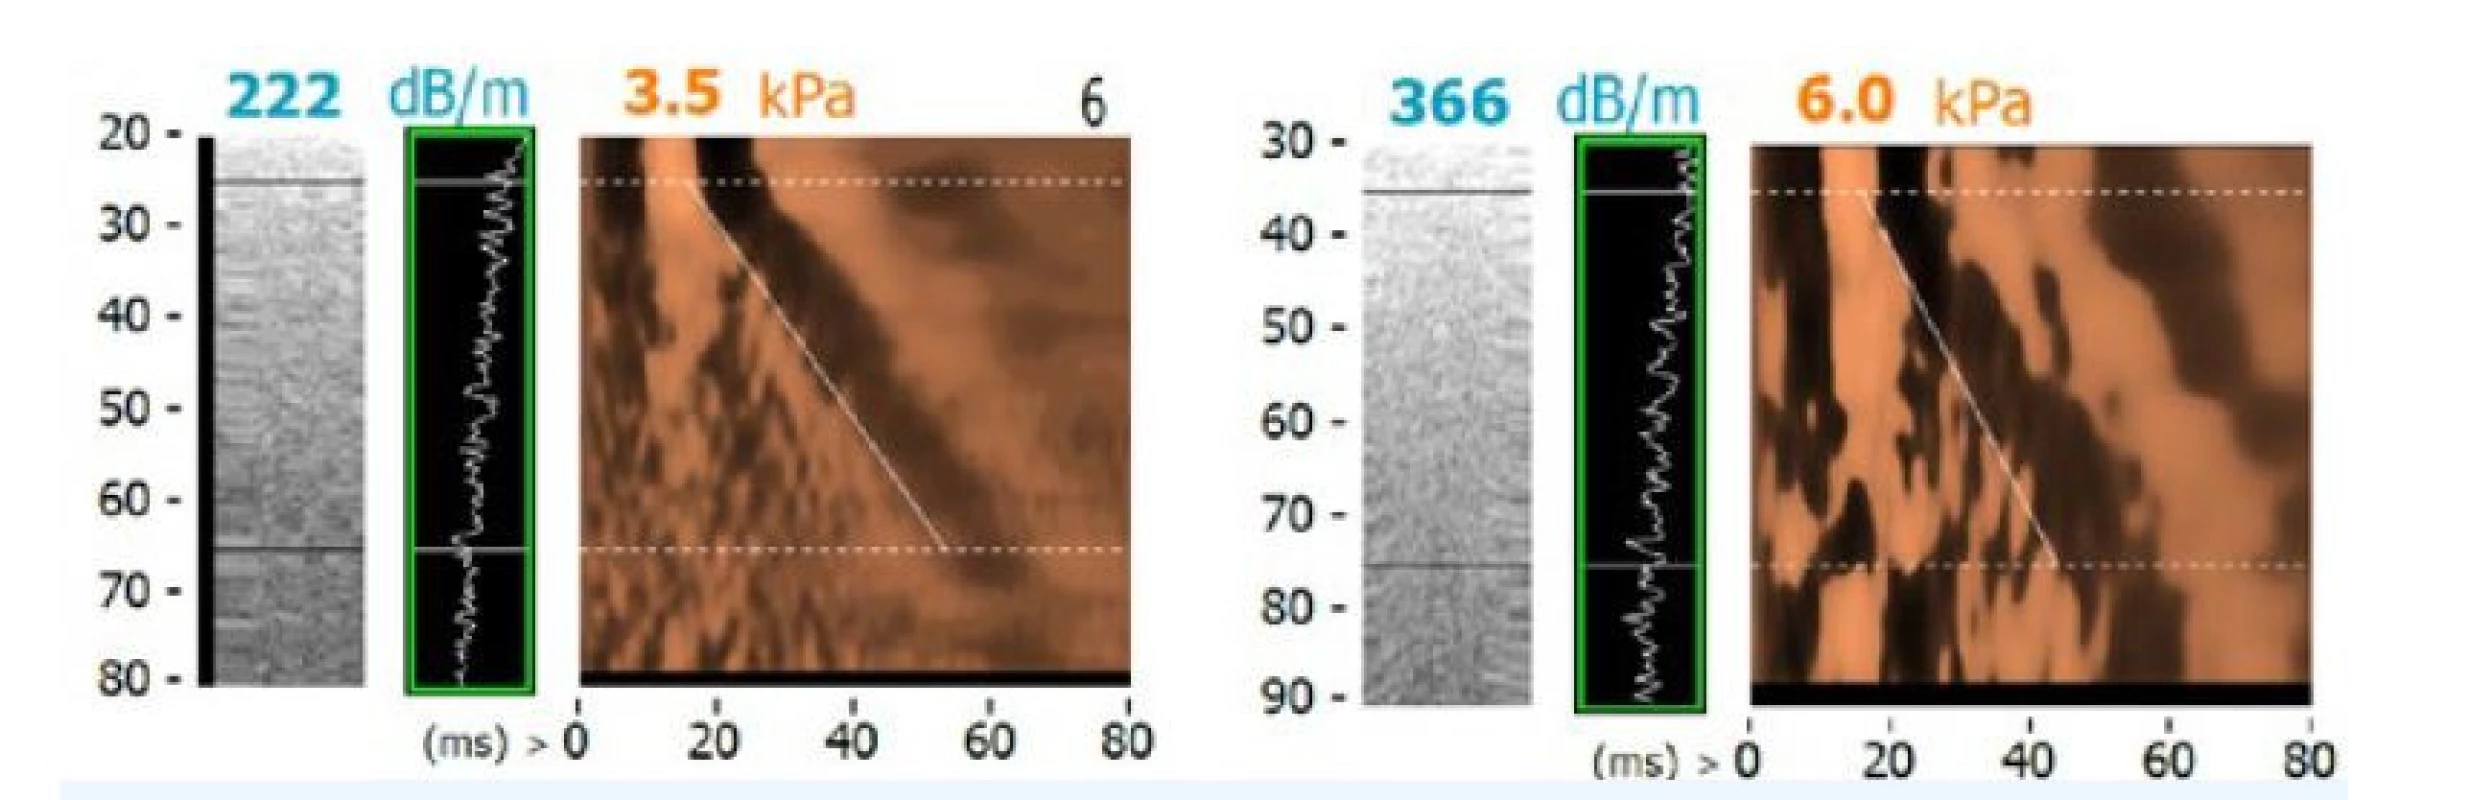 Měření CAP přístrojem FibroScan – normální játra (A) a těžká steatóza grade 3 (B)